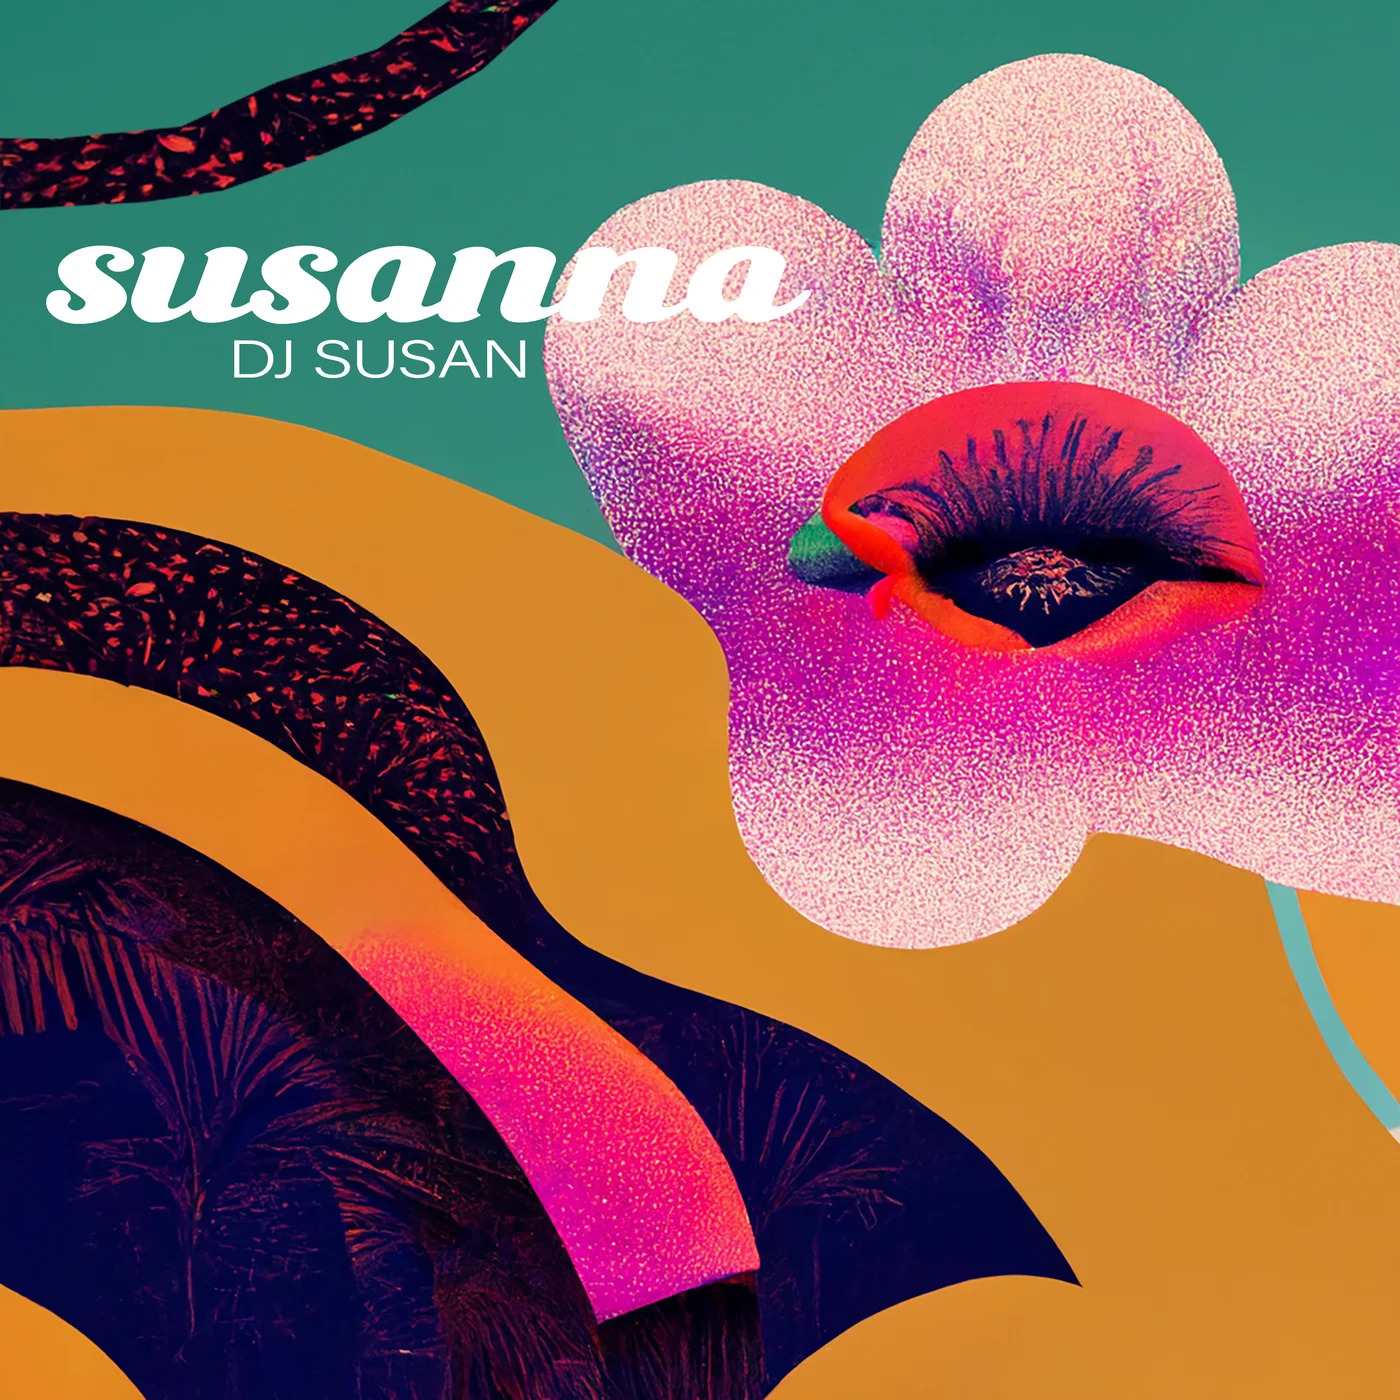 DJ Susan - Susanna (Extended Mix)